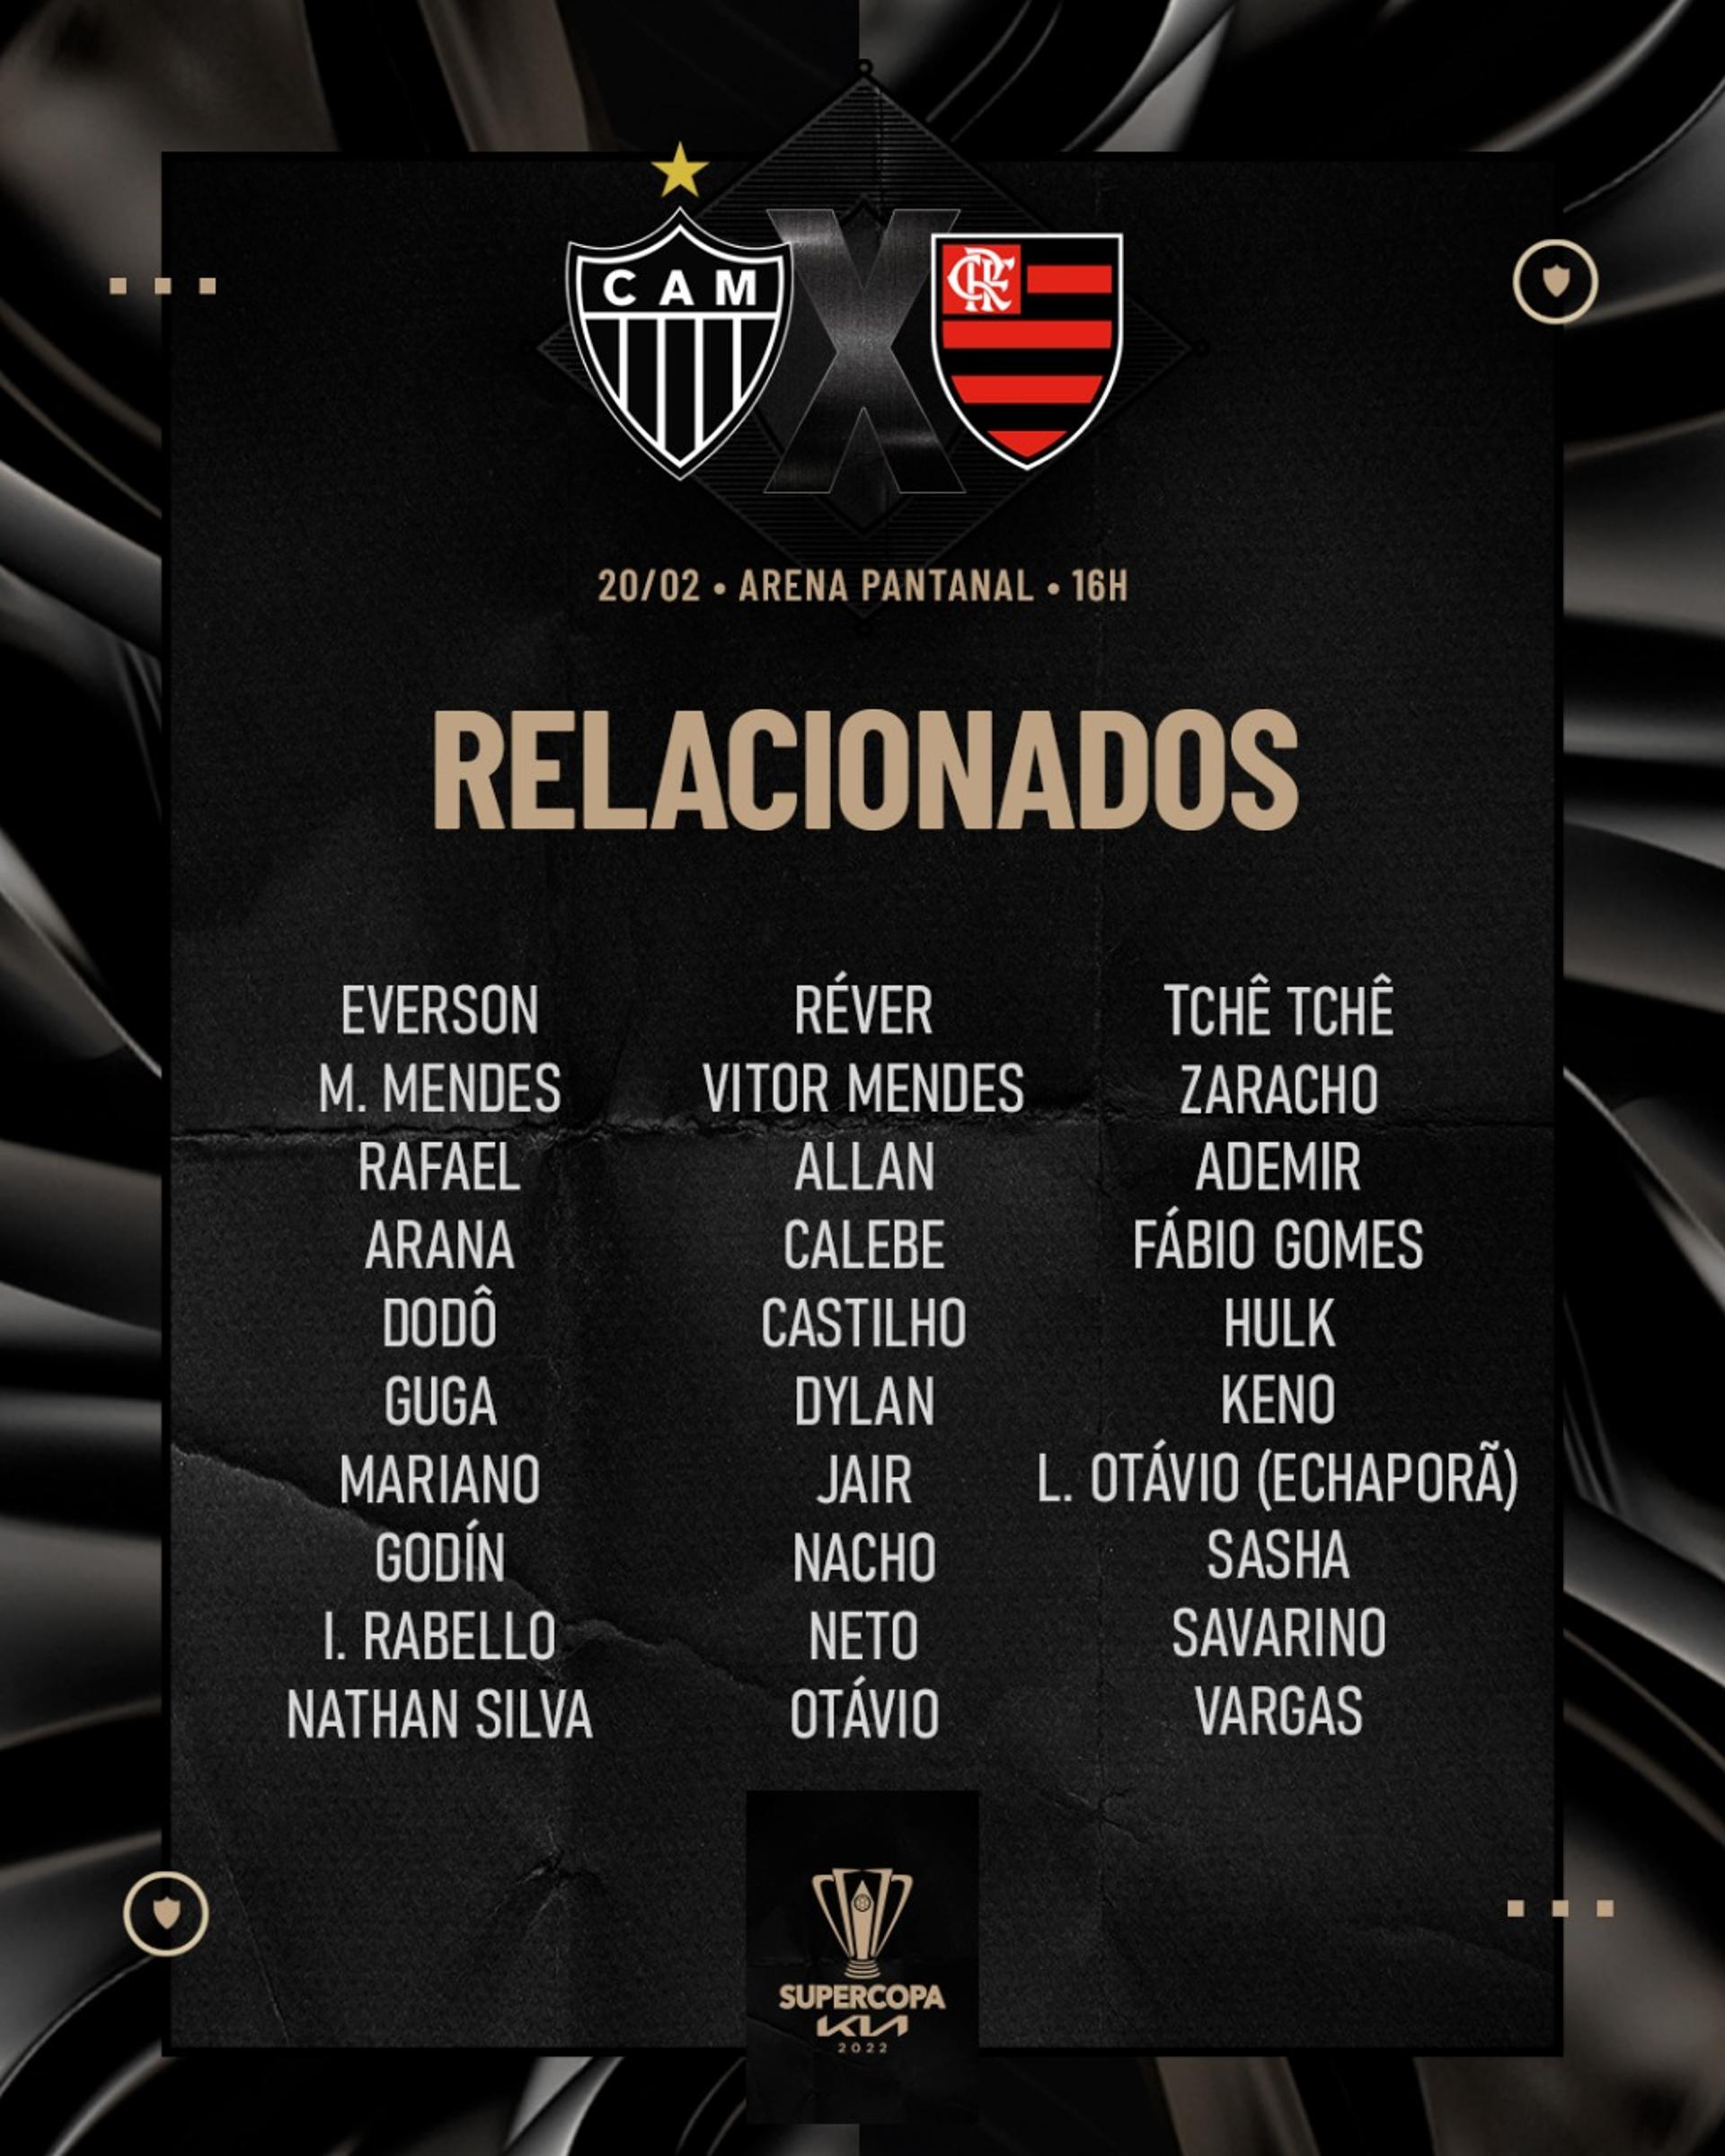 O Galo terá seus principais jogadores na decisão diante do Flamengo pela Supercopa do Brasil